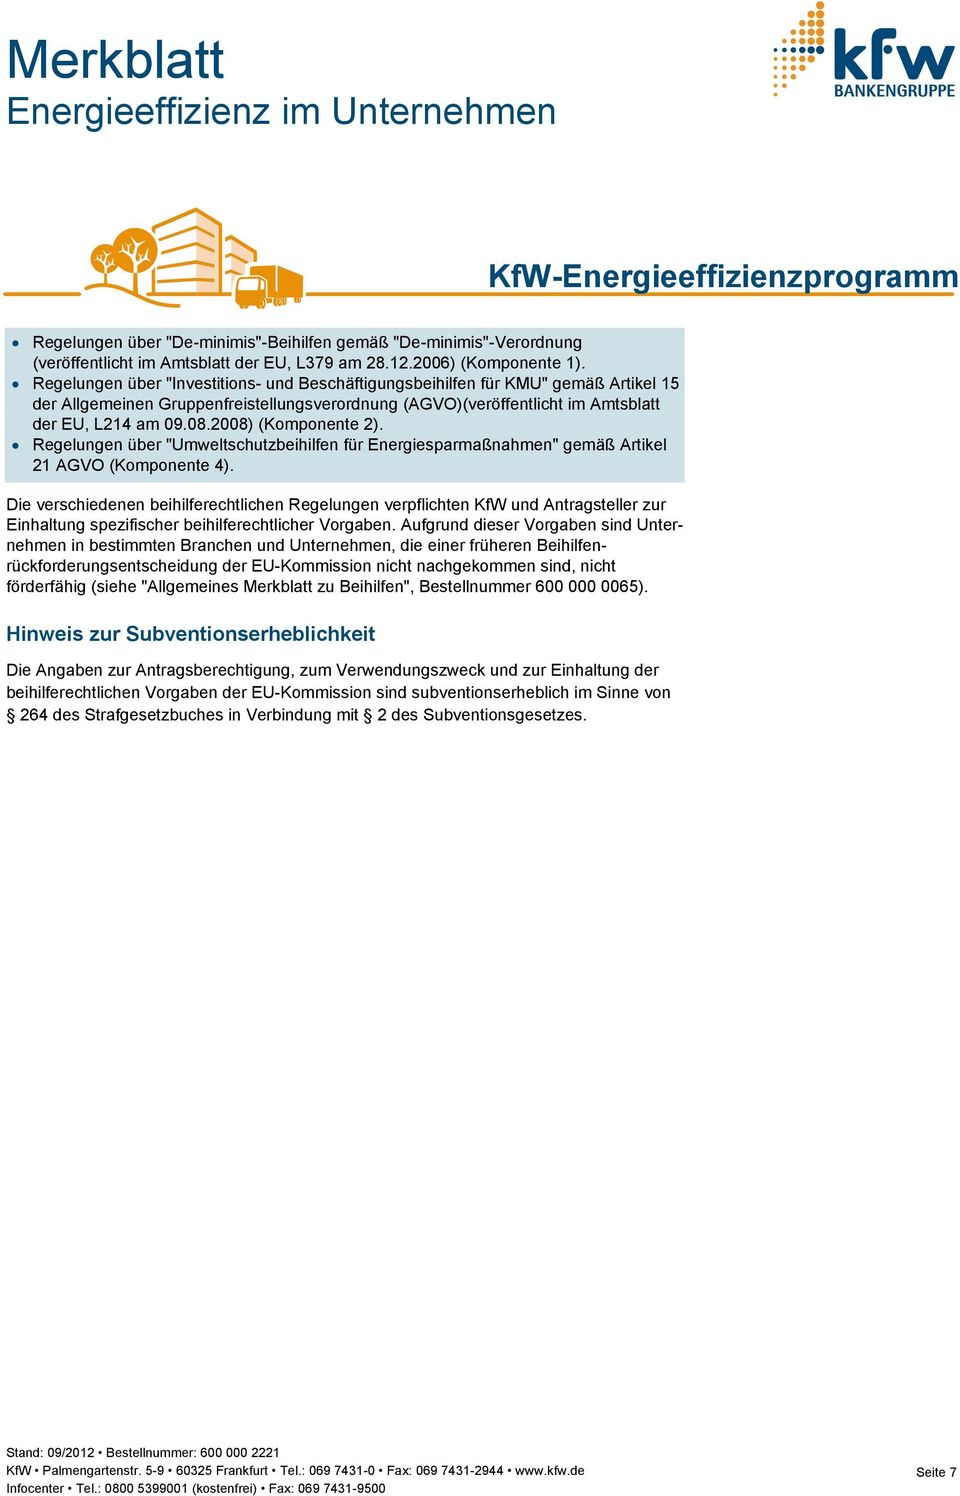 2008) (Komponente 2). Regelungen über "Umweltschutzbeihilfen für Energiesparmaßnahmen" gemäß Artikel 21 AGVO (Komponente 4).